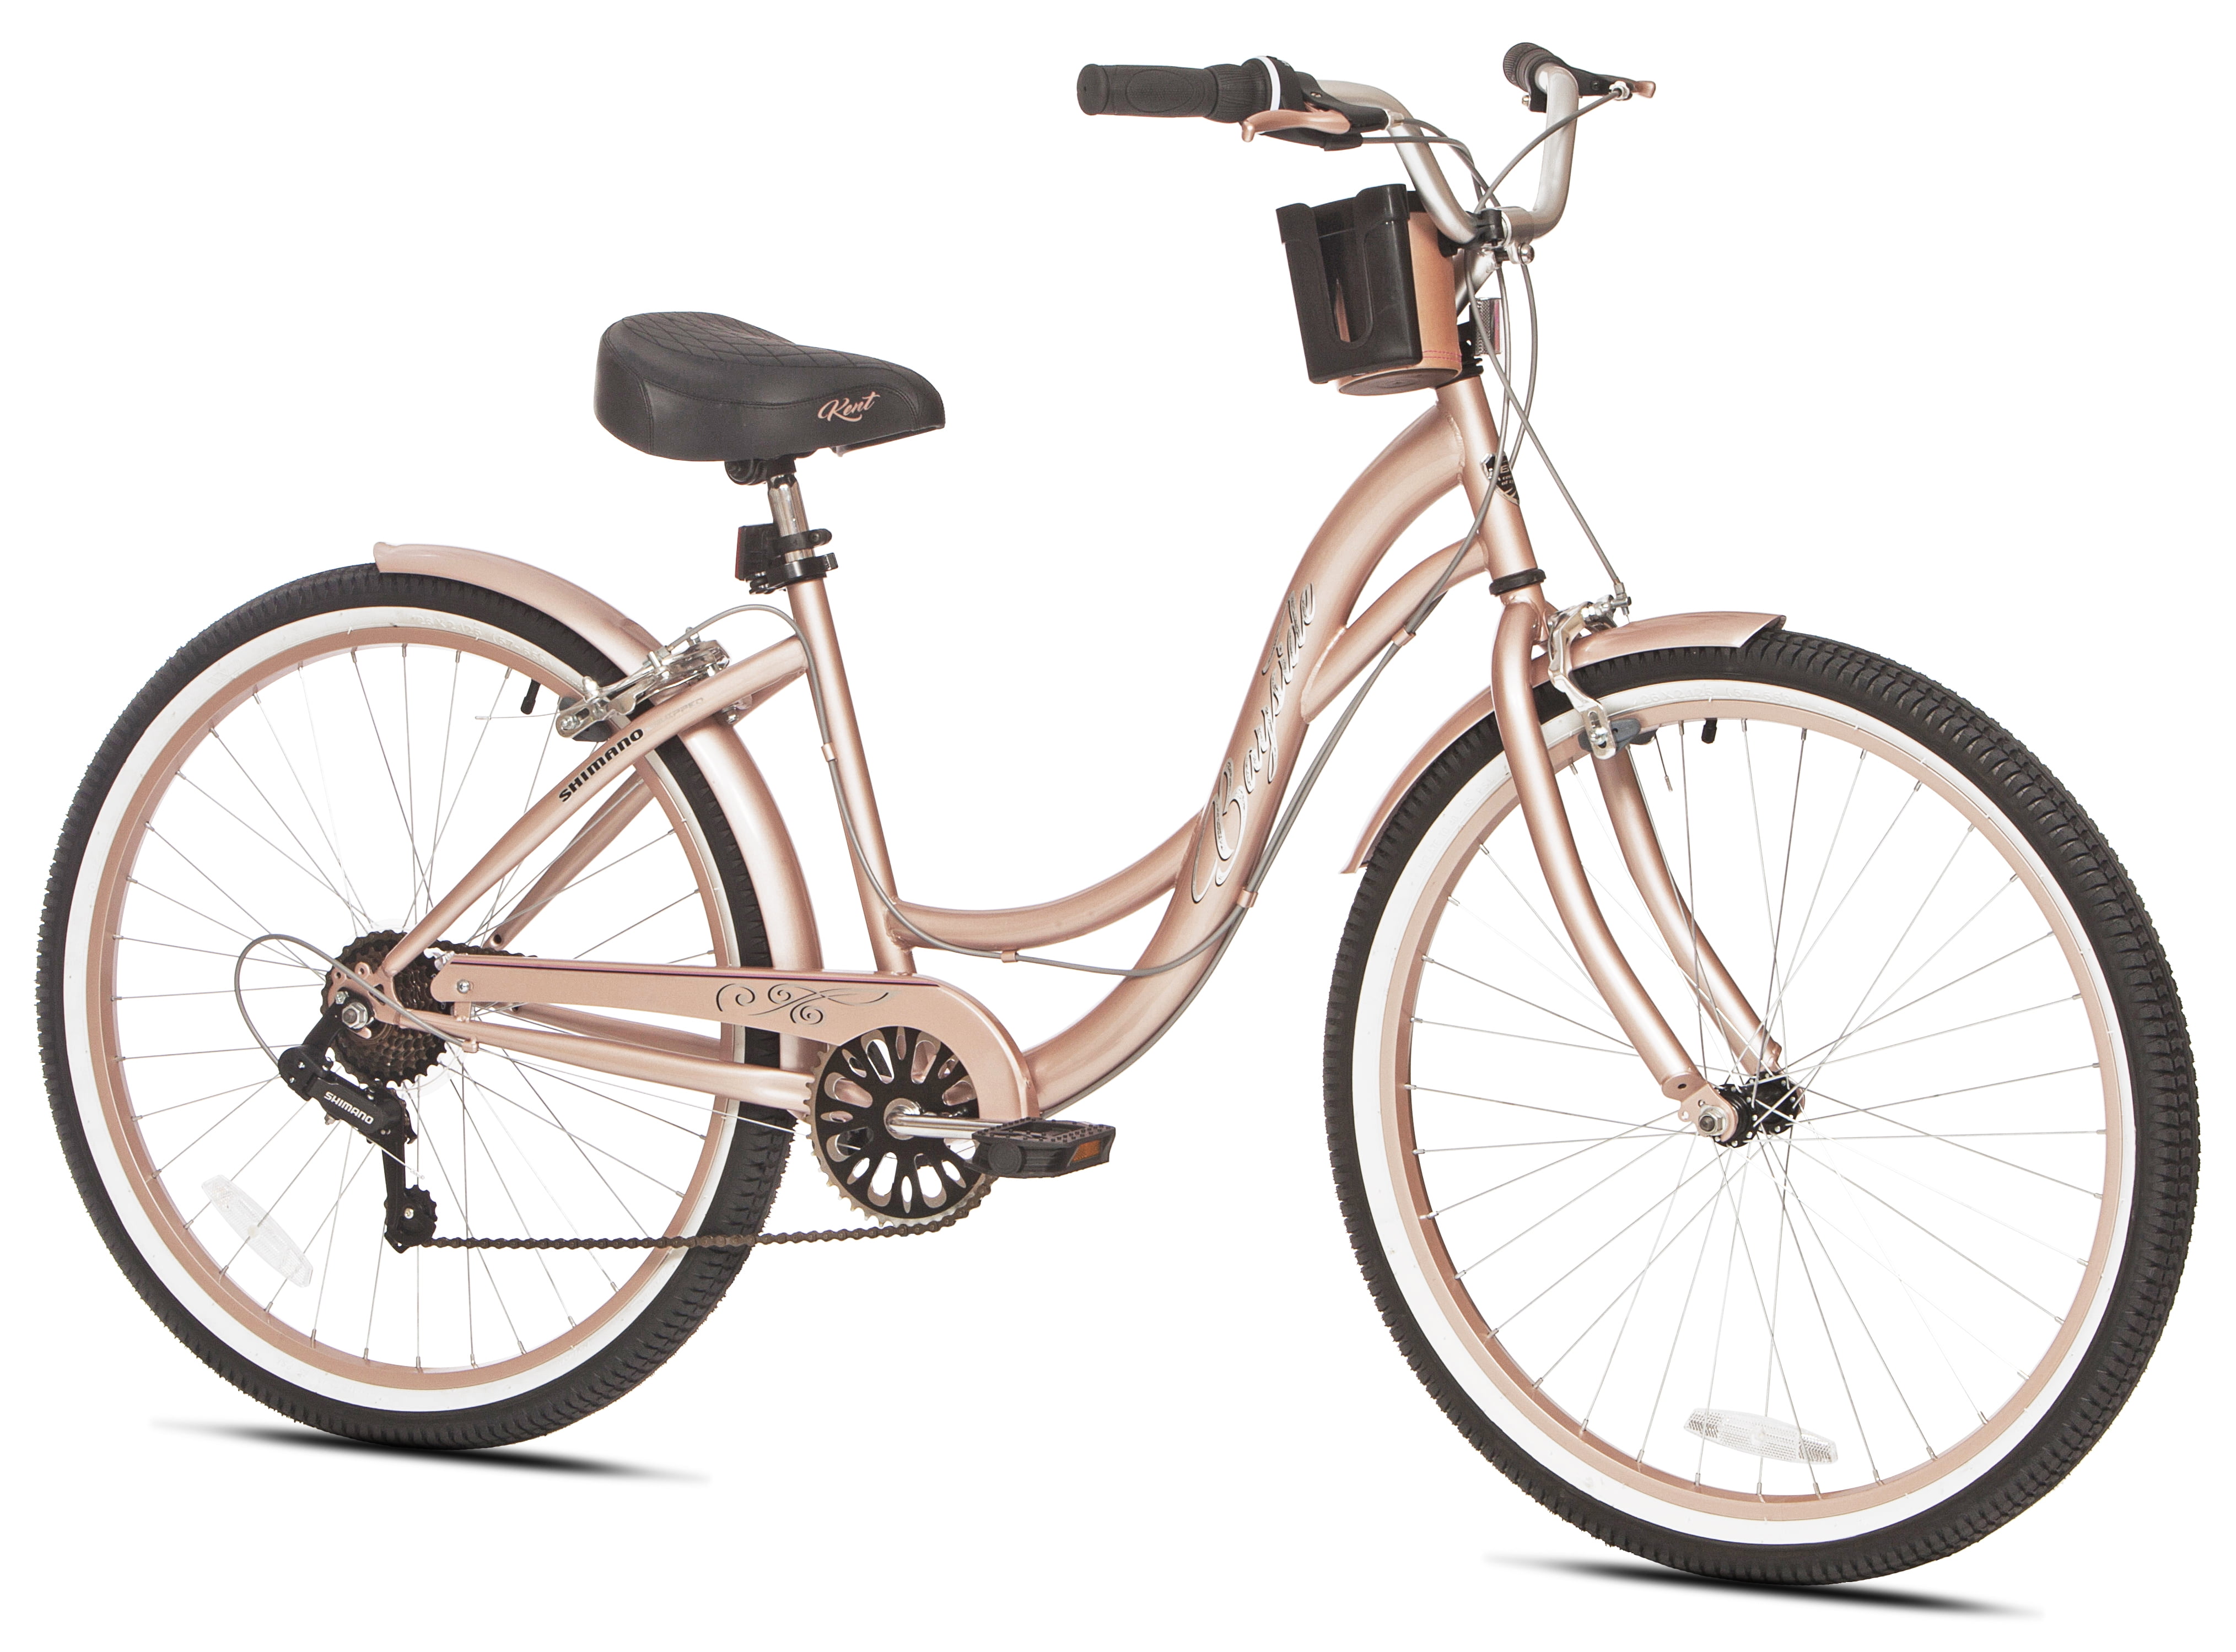 Kent 26In Women's Bike Bayside Cruiser Bicycle Rose Gold Shimano 7 Speed Outdoor 16751726533 eBay